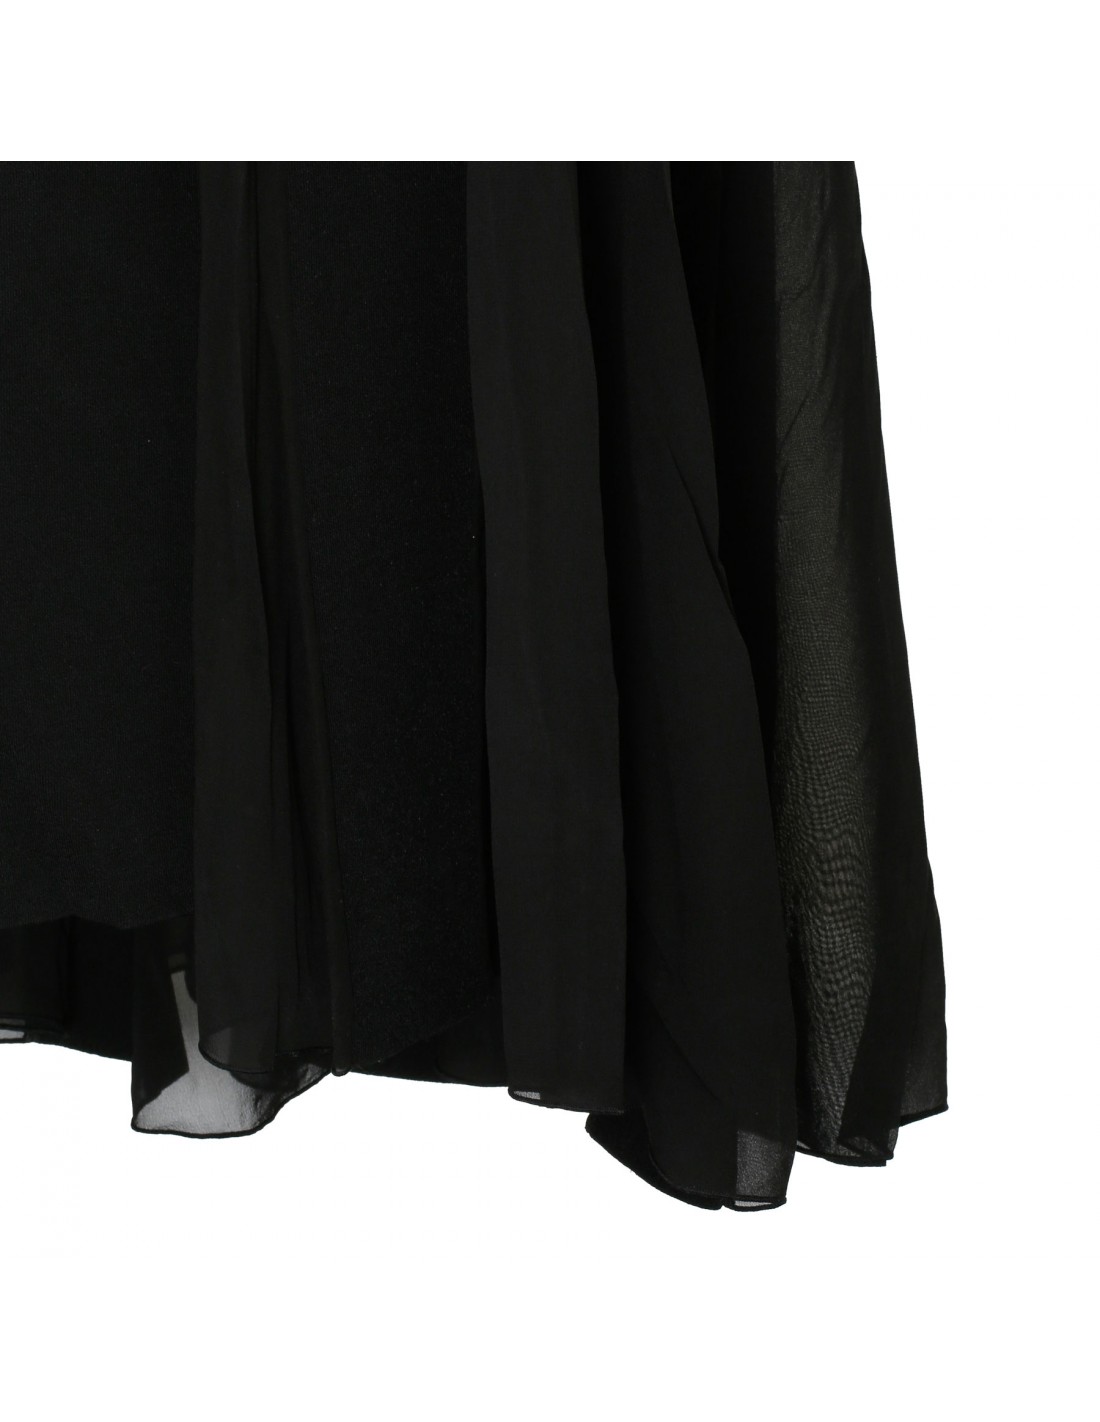 Black stretch-viscose flared dress